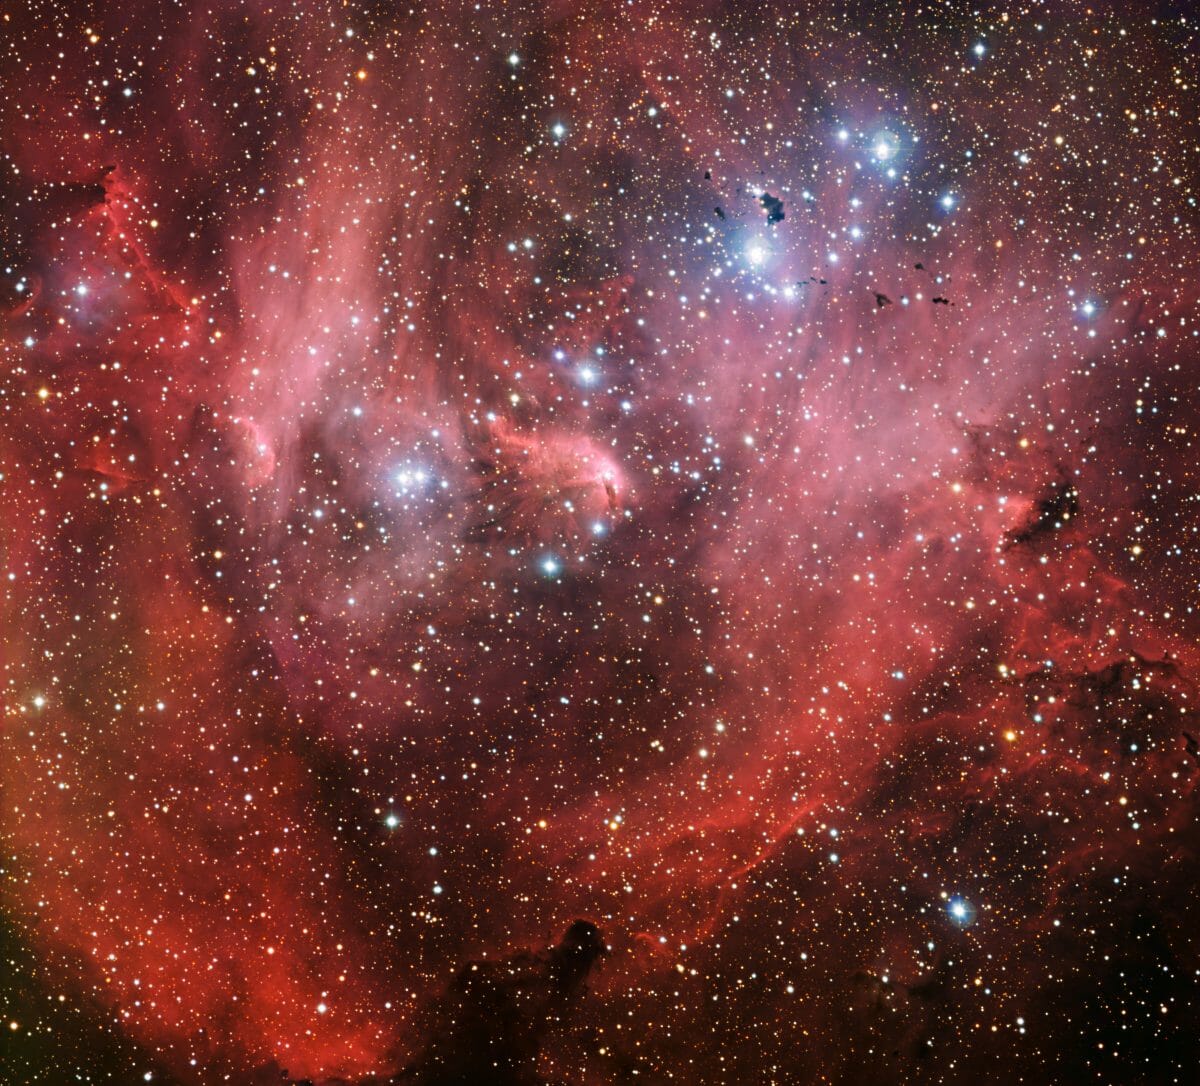 赤い光の海に浮かぶ若い星々と暗黒の雲、“ケンタウルス座”の輝線星雲